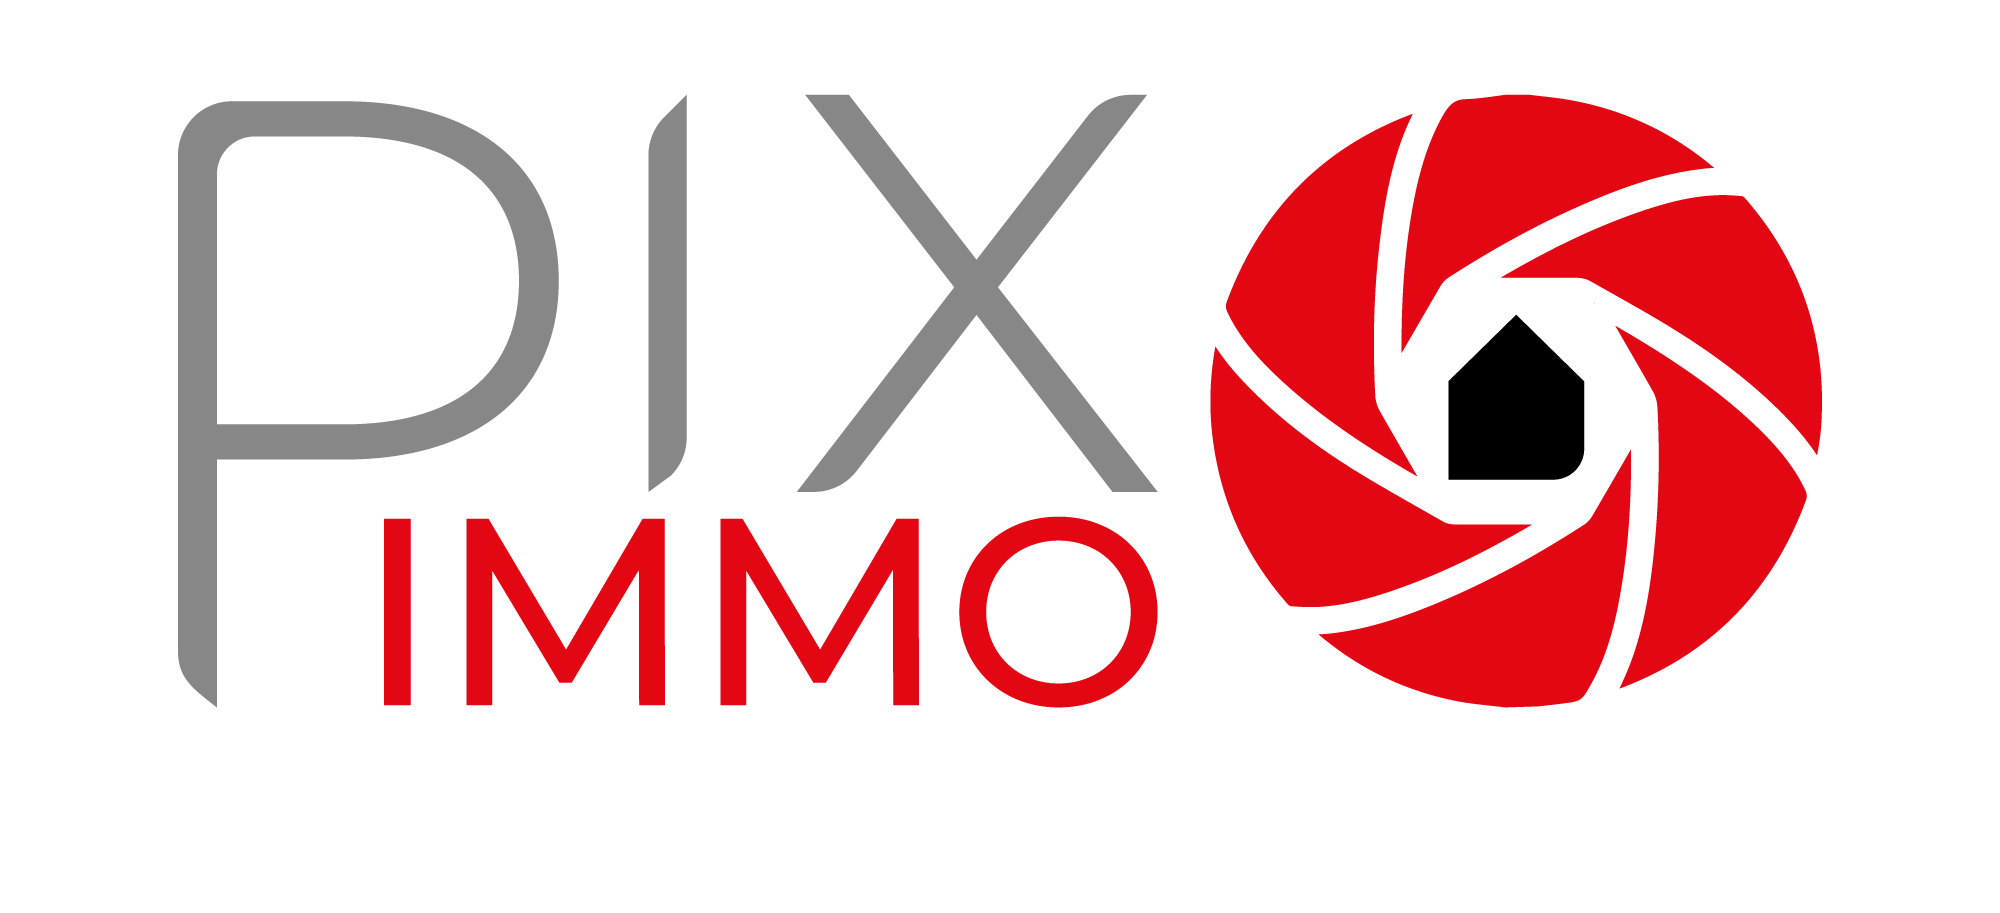 Pix Immo Estate